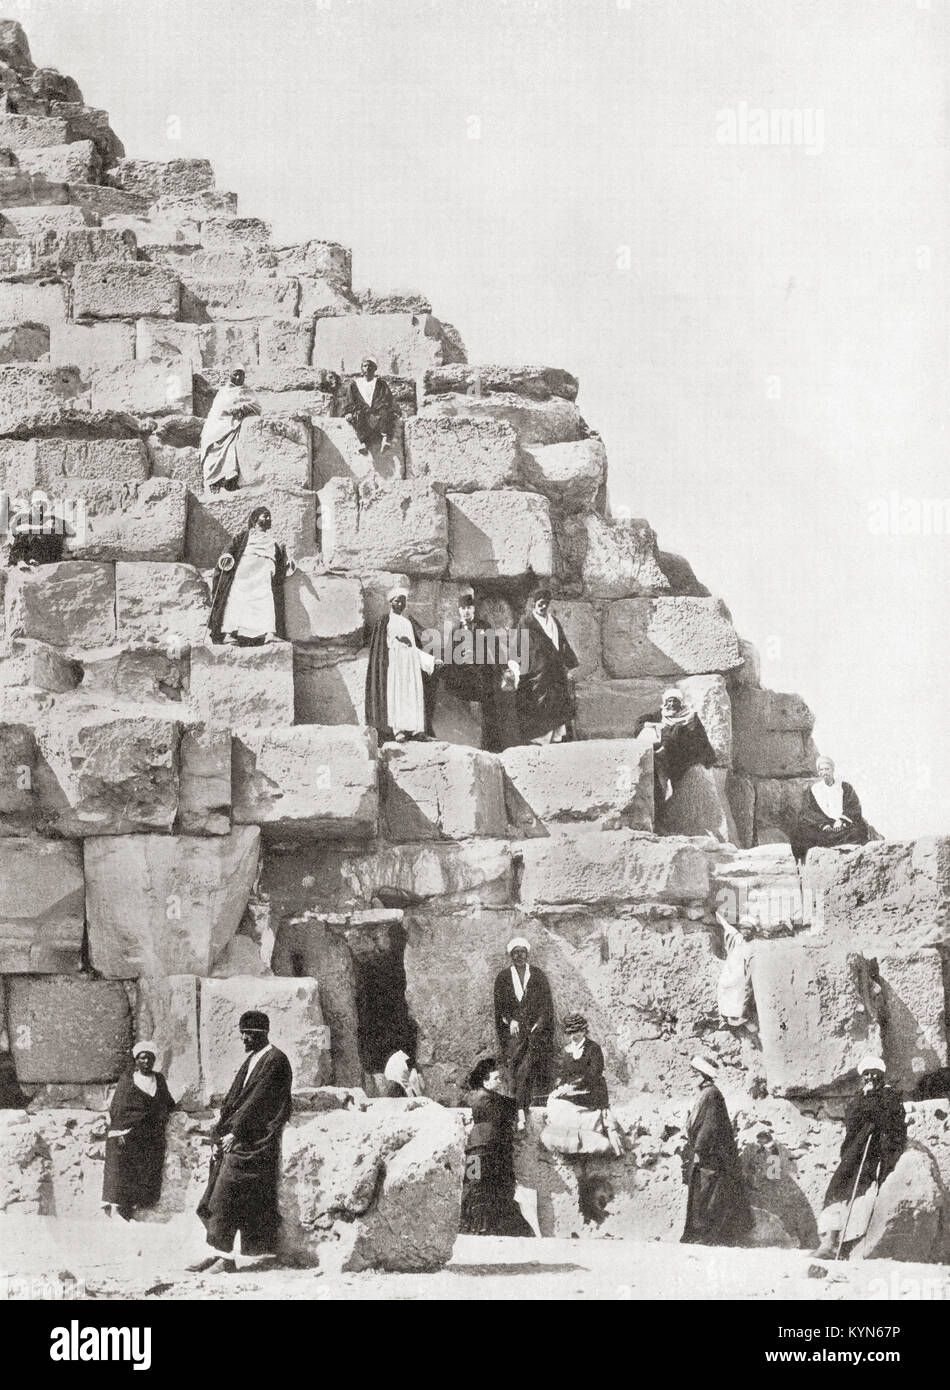 Un coin de la grande pyramide de Gizeh aka la pyramide de Kheops Khoufou, plateau de Gizeh, Le Caire, Égypte. Des merveilles du monde, publié vers 1920. Banque D'Images